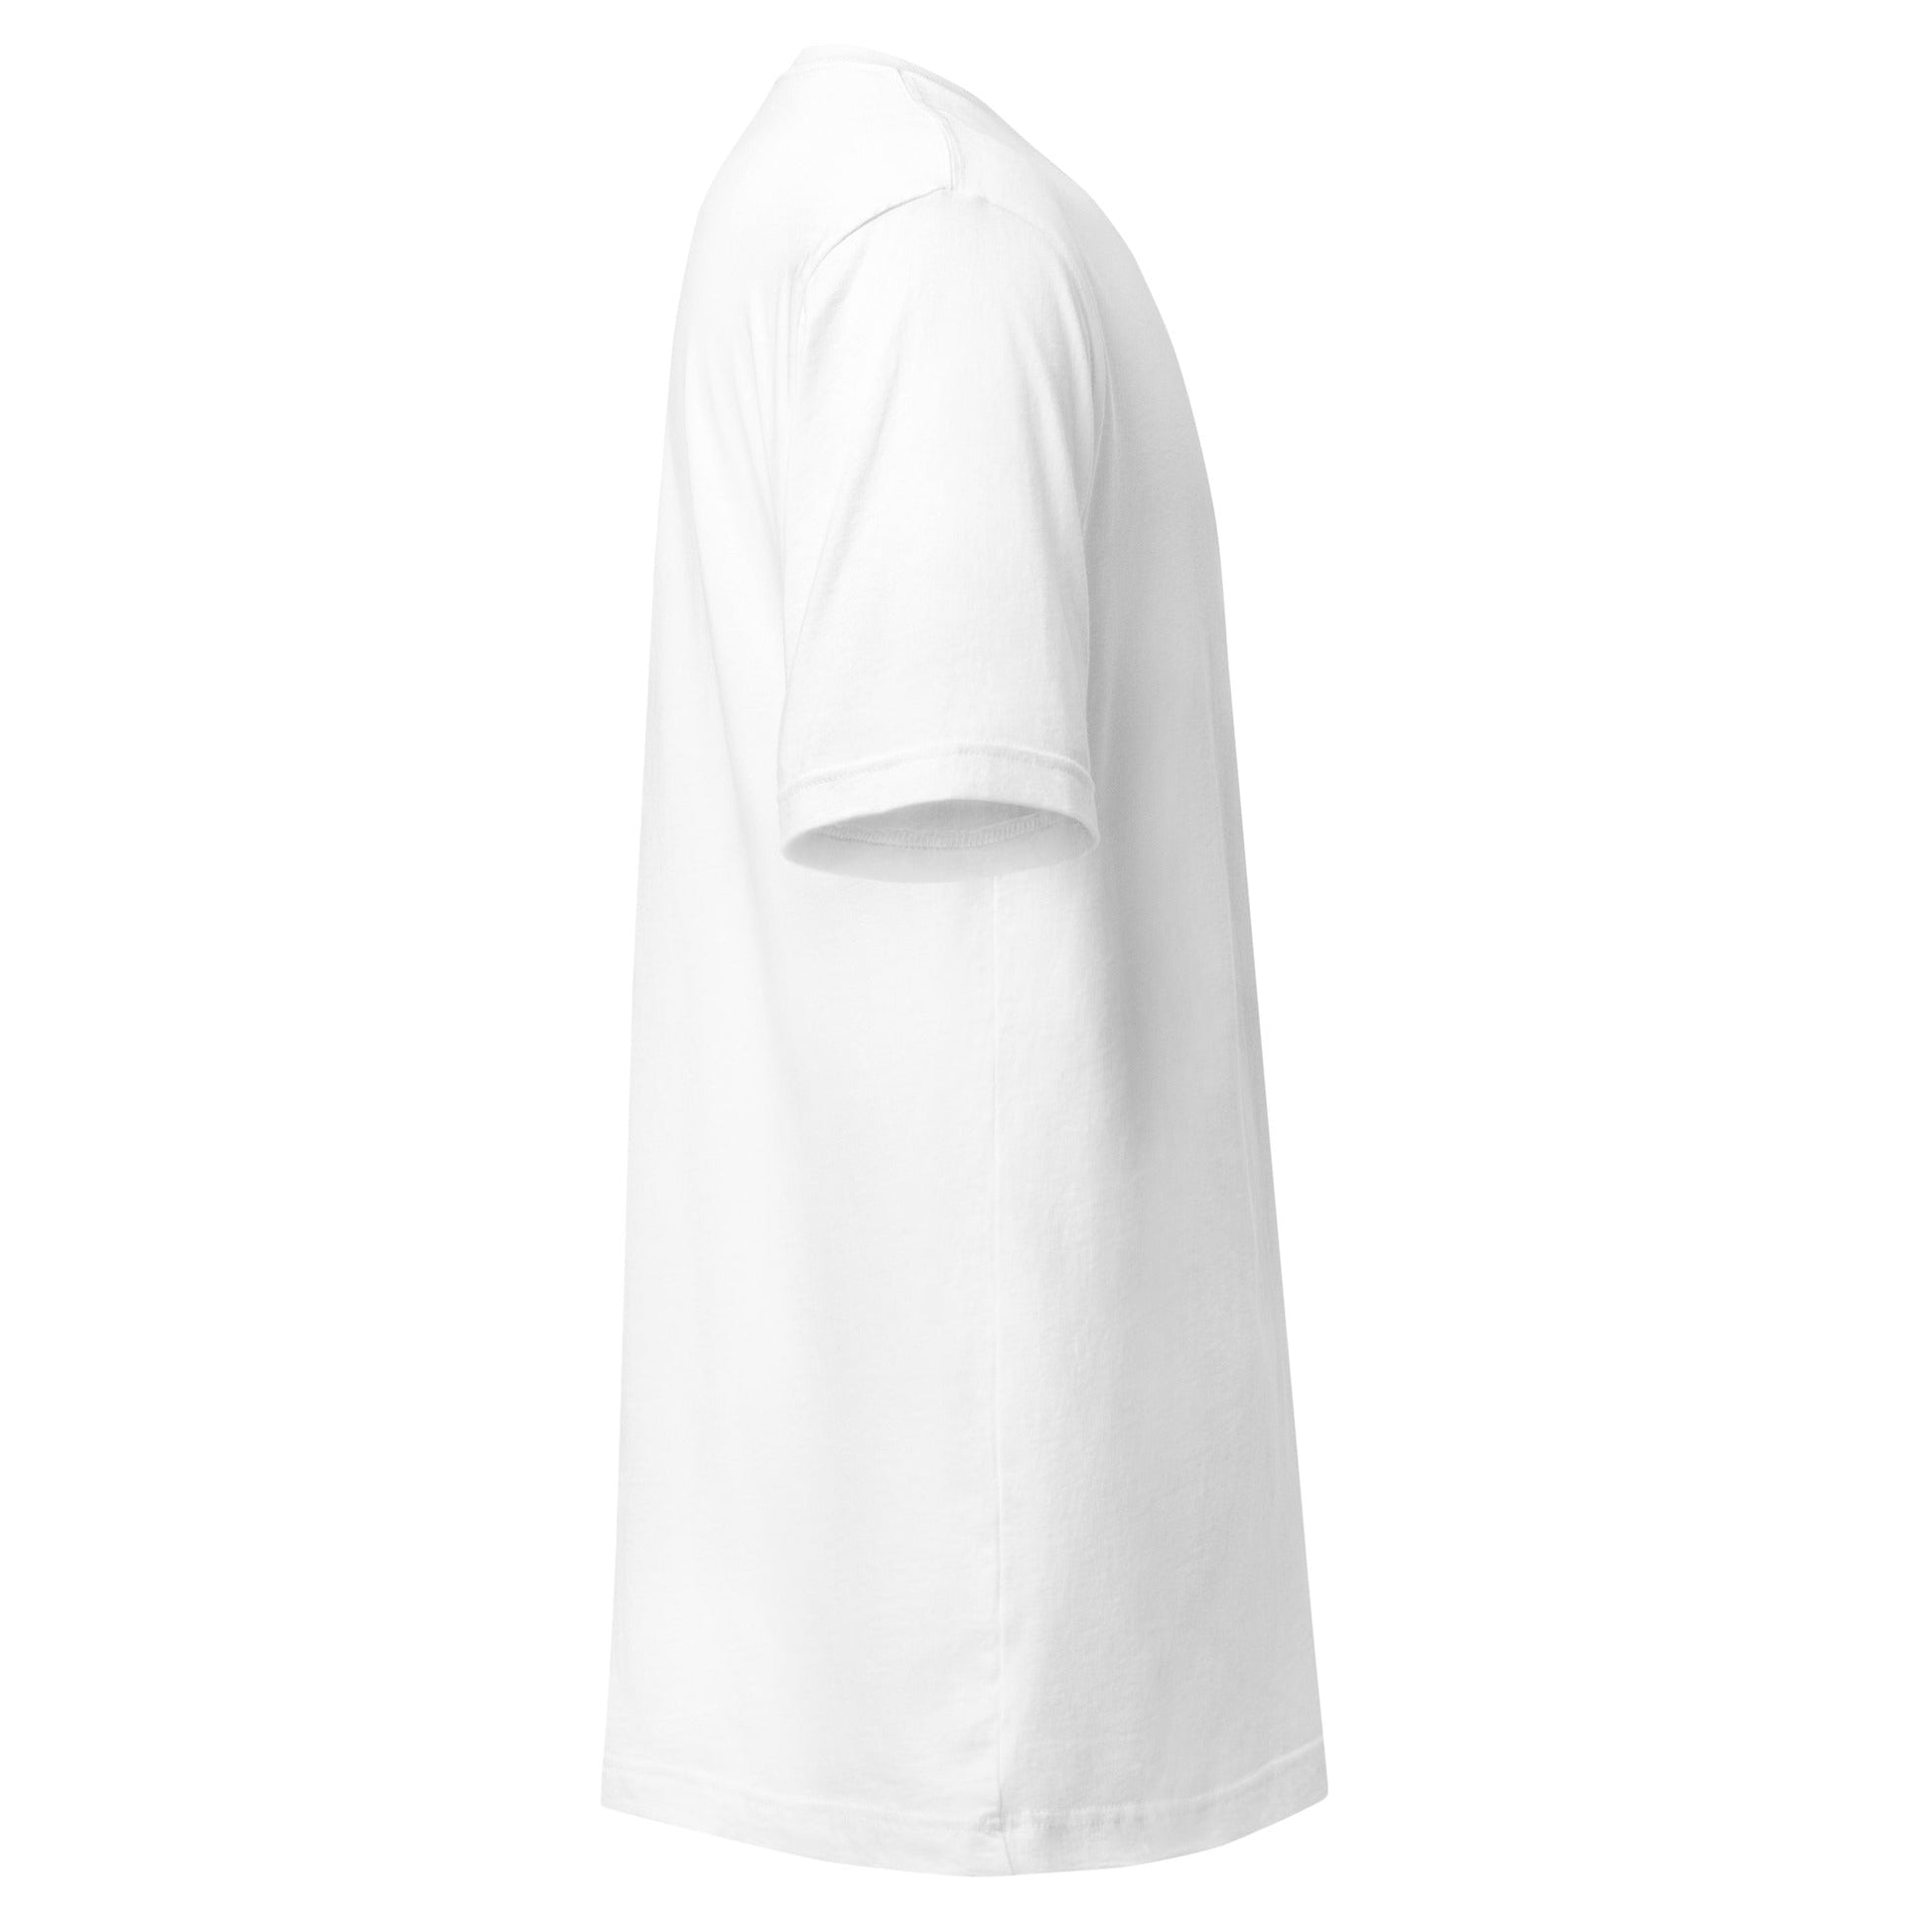 Camiseta Blanca de Algodón Pack 6 - Elegancia y calidad en nuestra insignia. Descubre la perfección del algodón premium importado. Paquete de 6